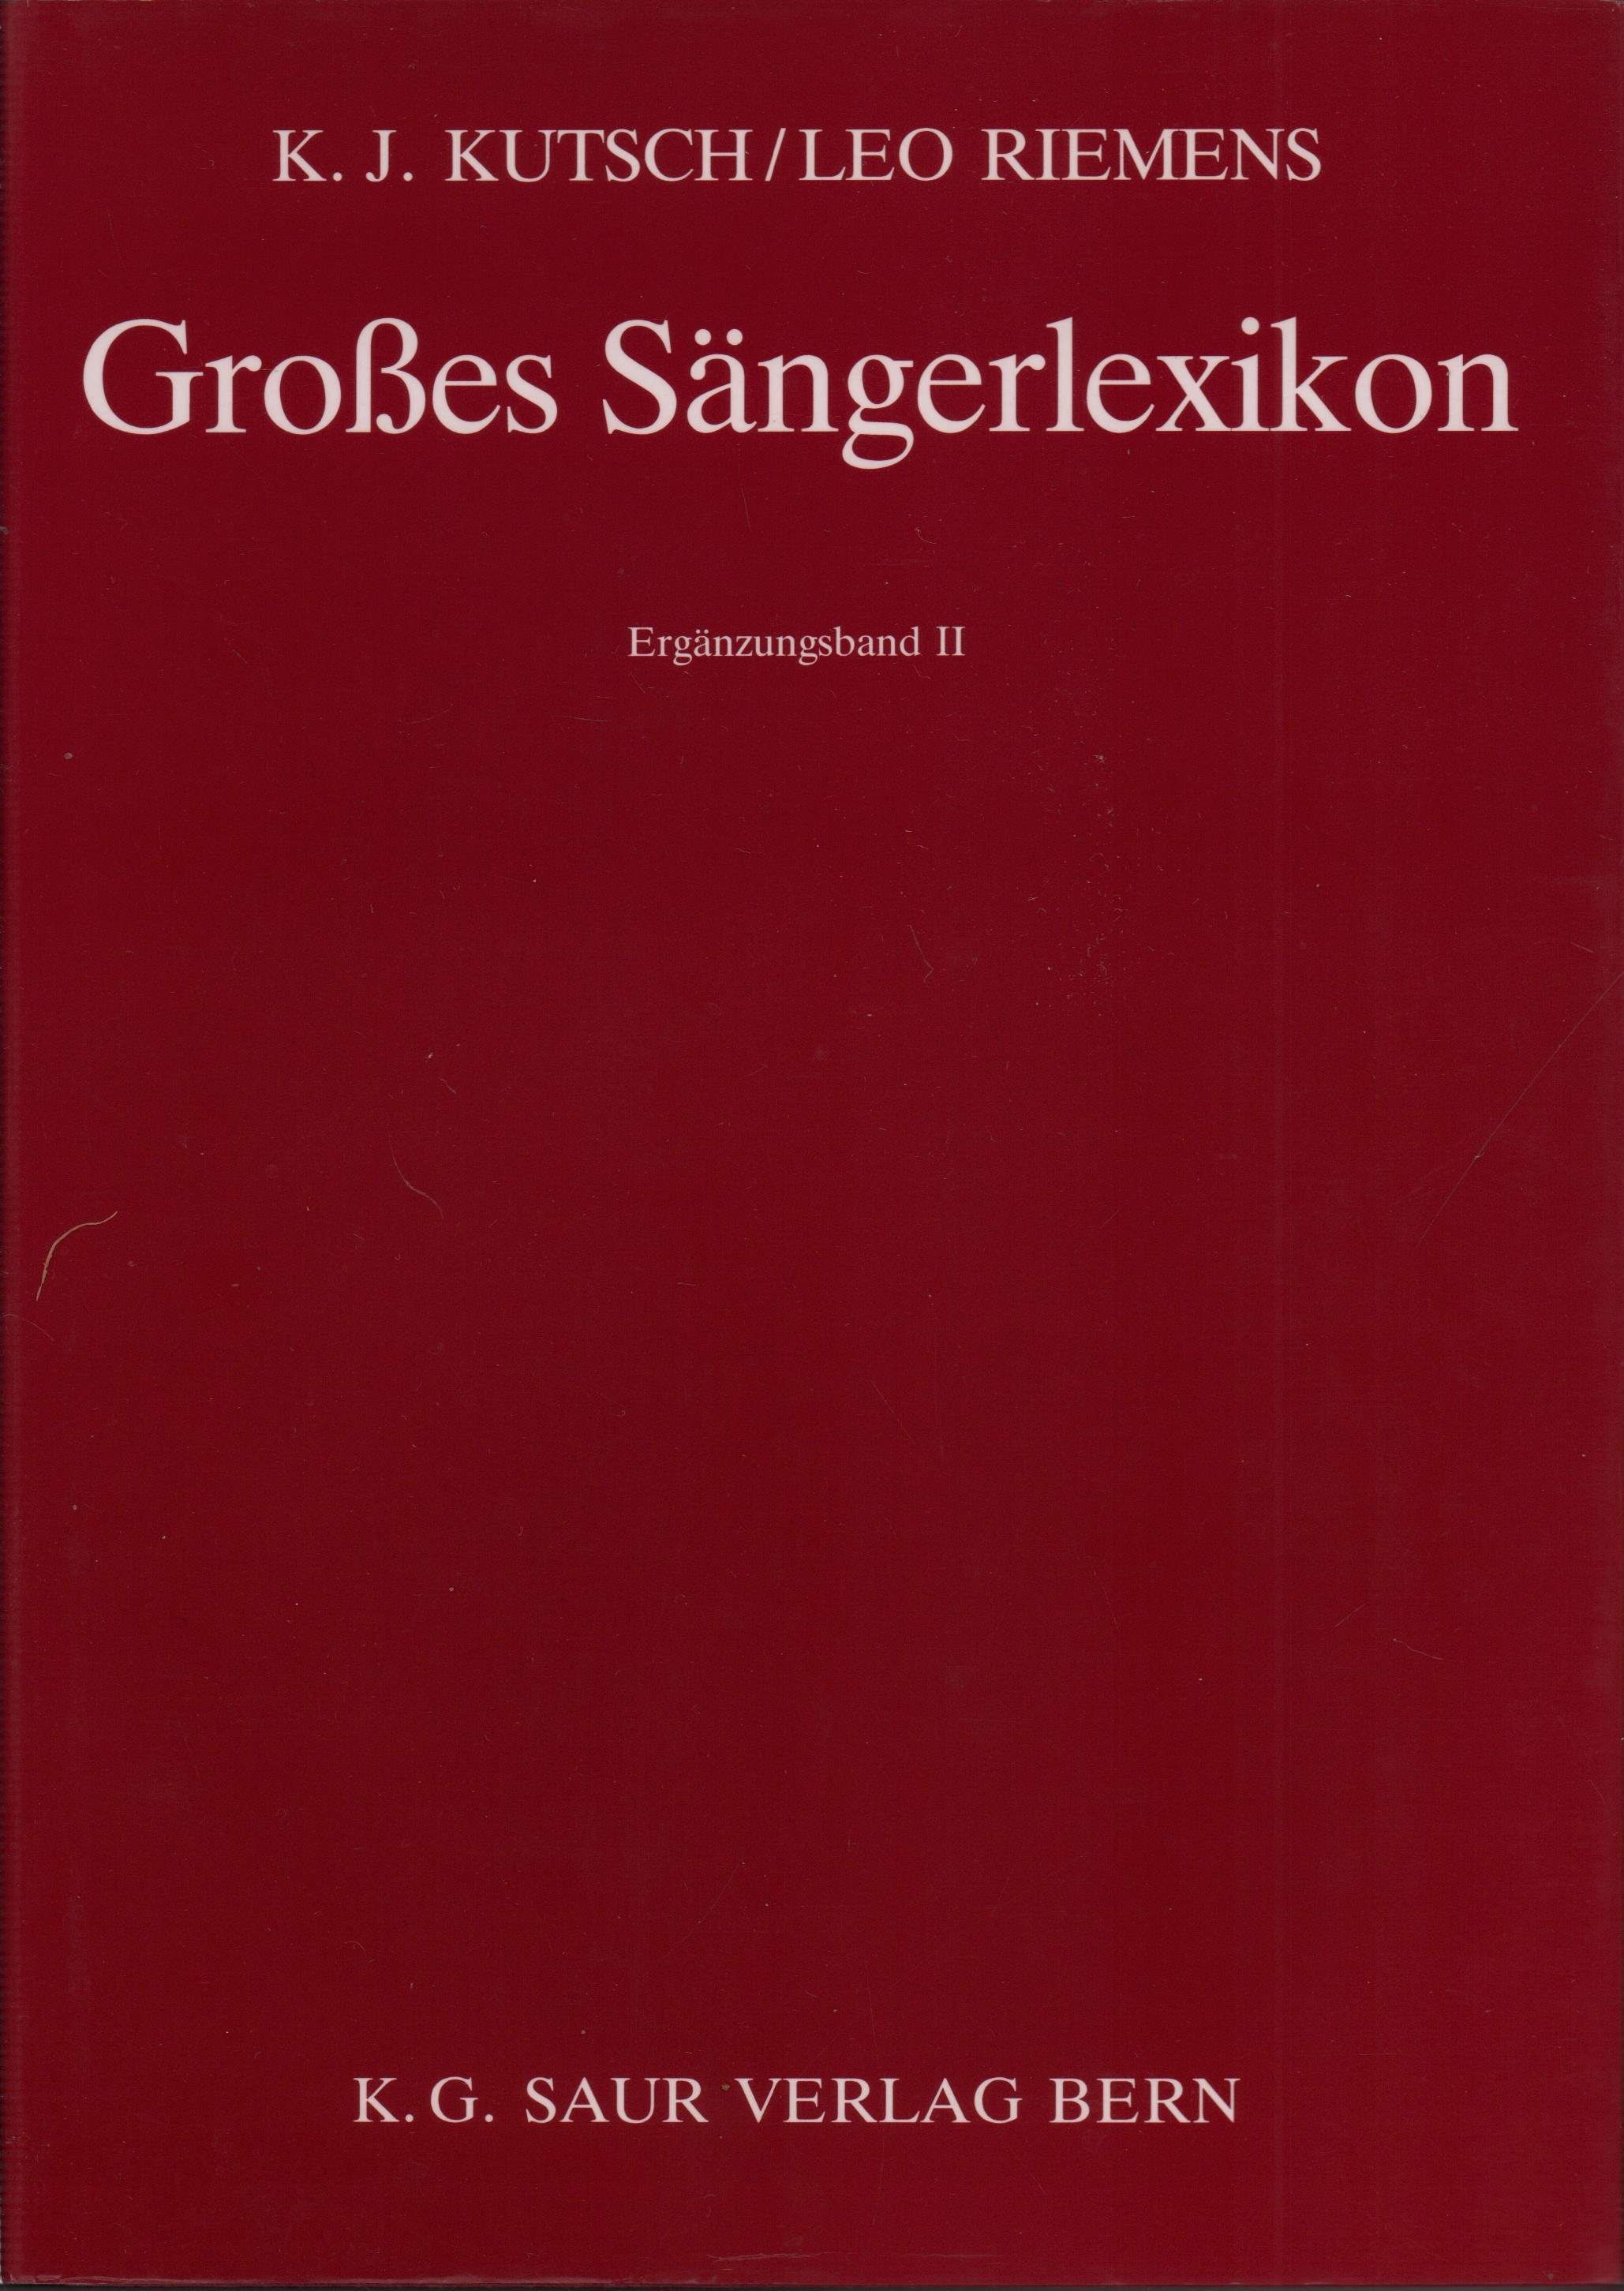 Großes Sängerlexikon. Ergänzungsband II. Unter Mitwirkung von Hansjörg Rost. - Kutsch, Karl J. / Riemens, Leo.